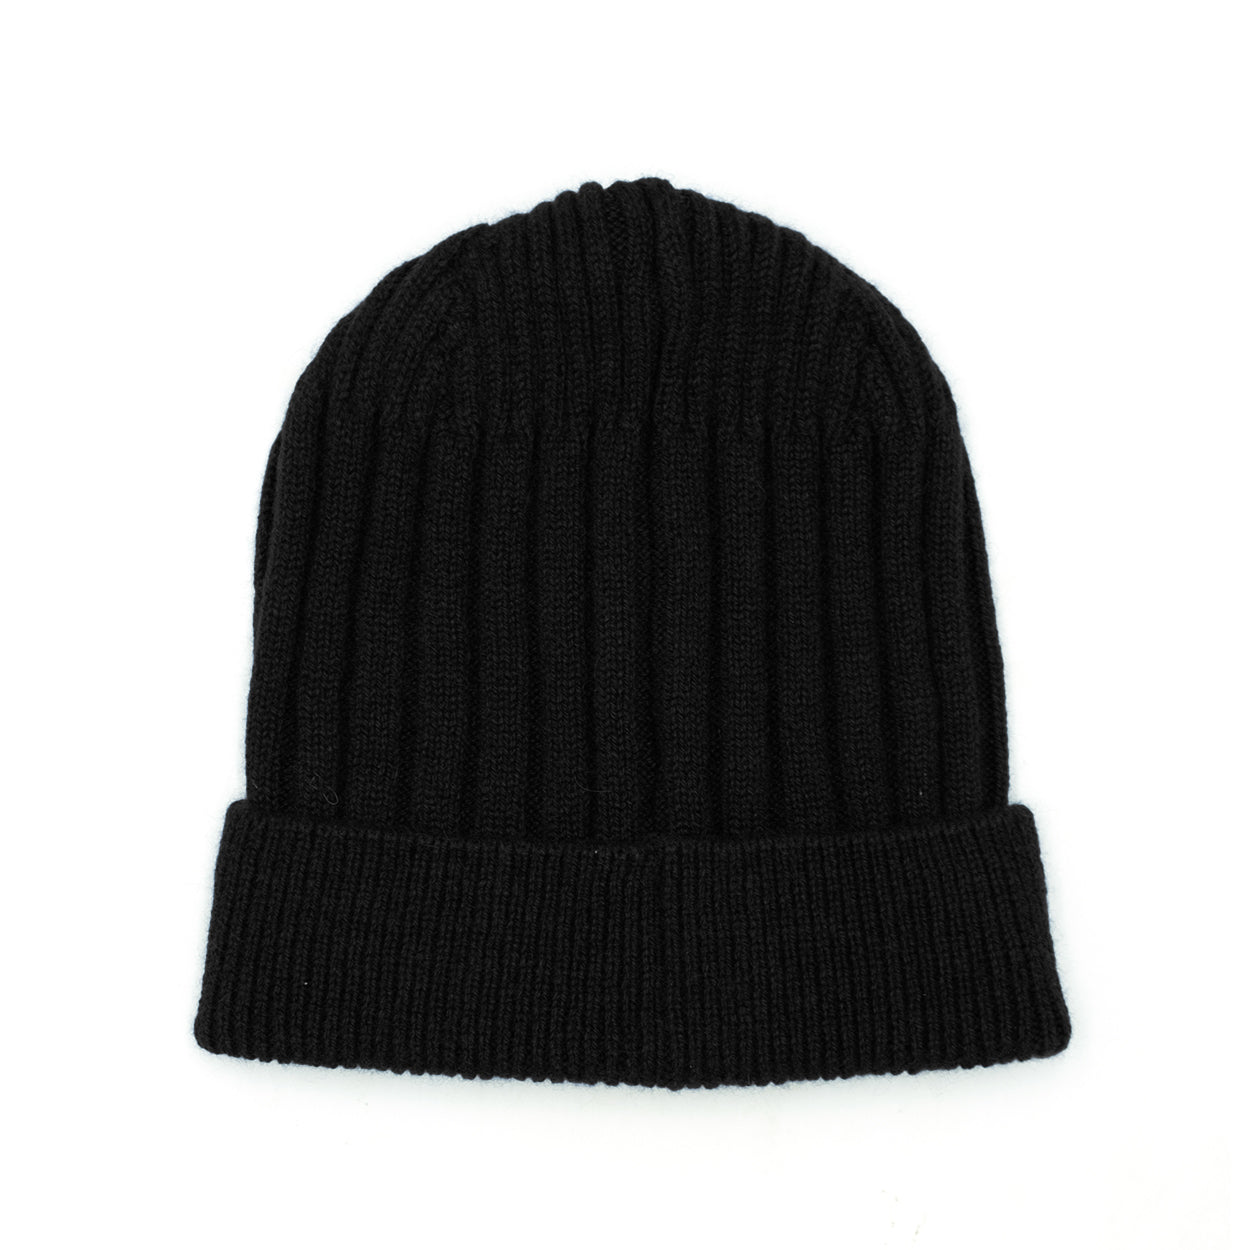 Plain black cashmere men's cap